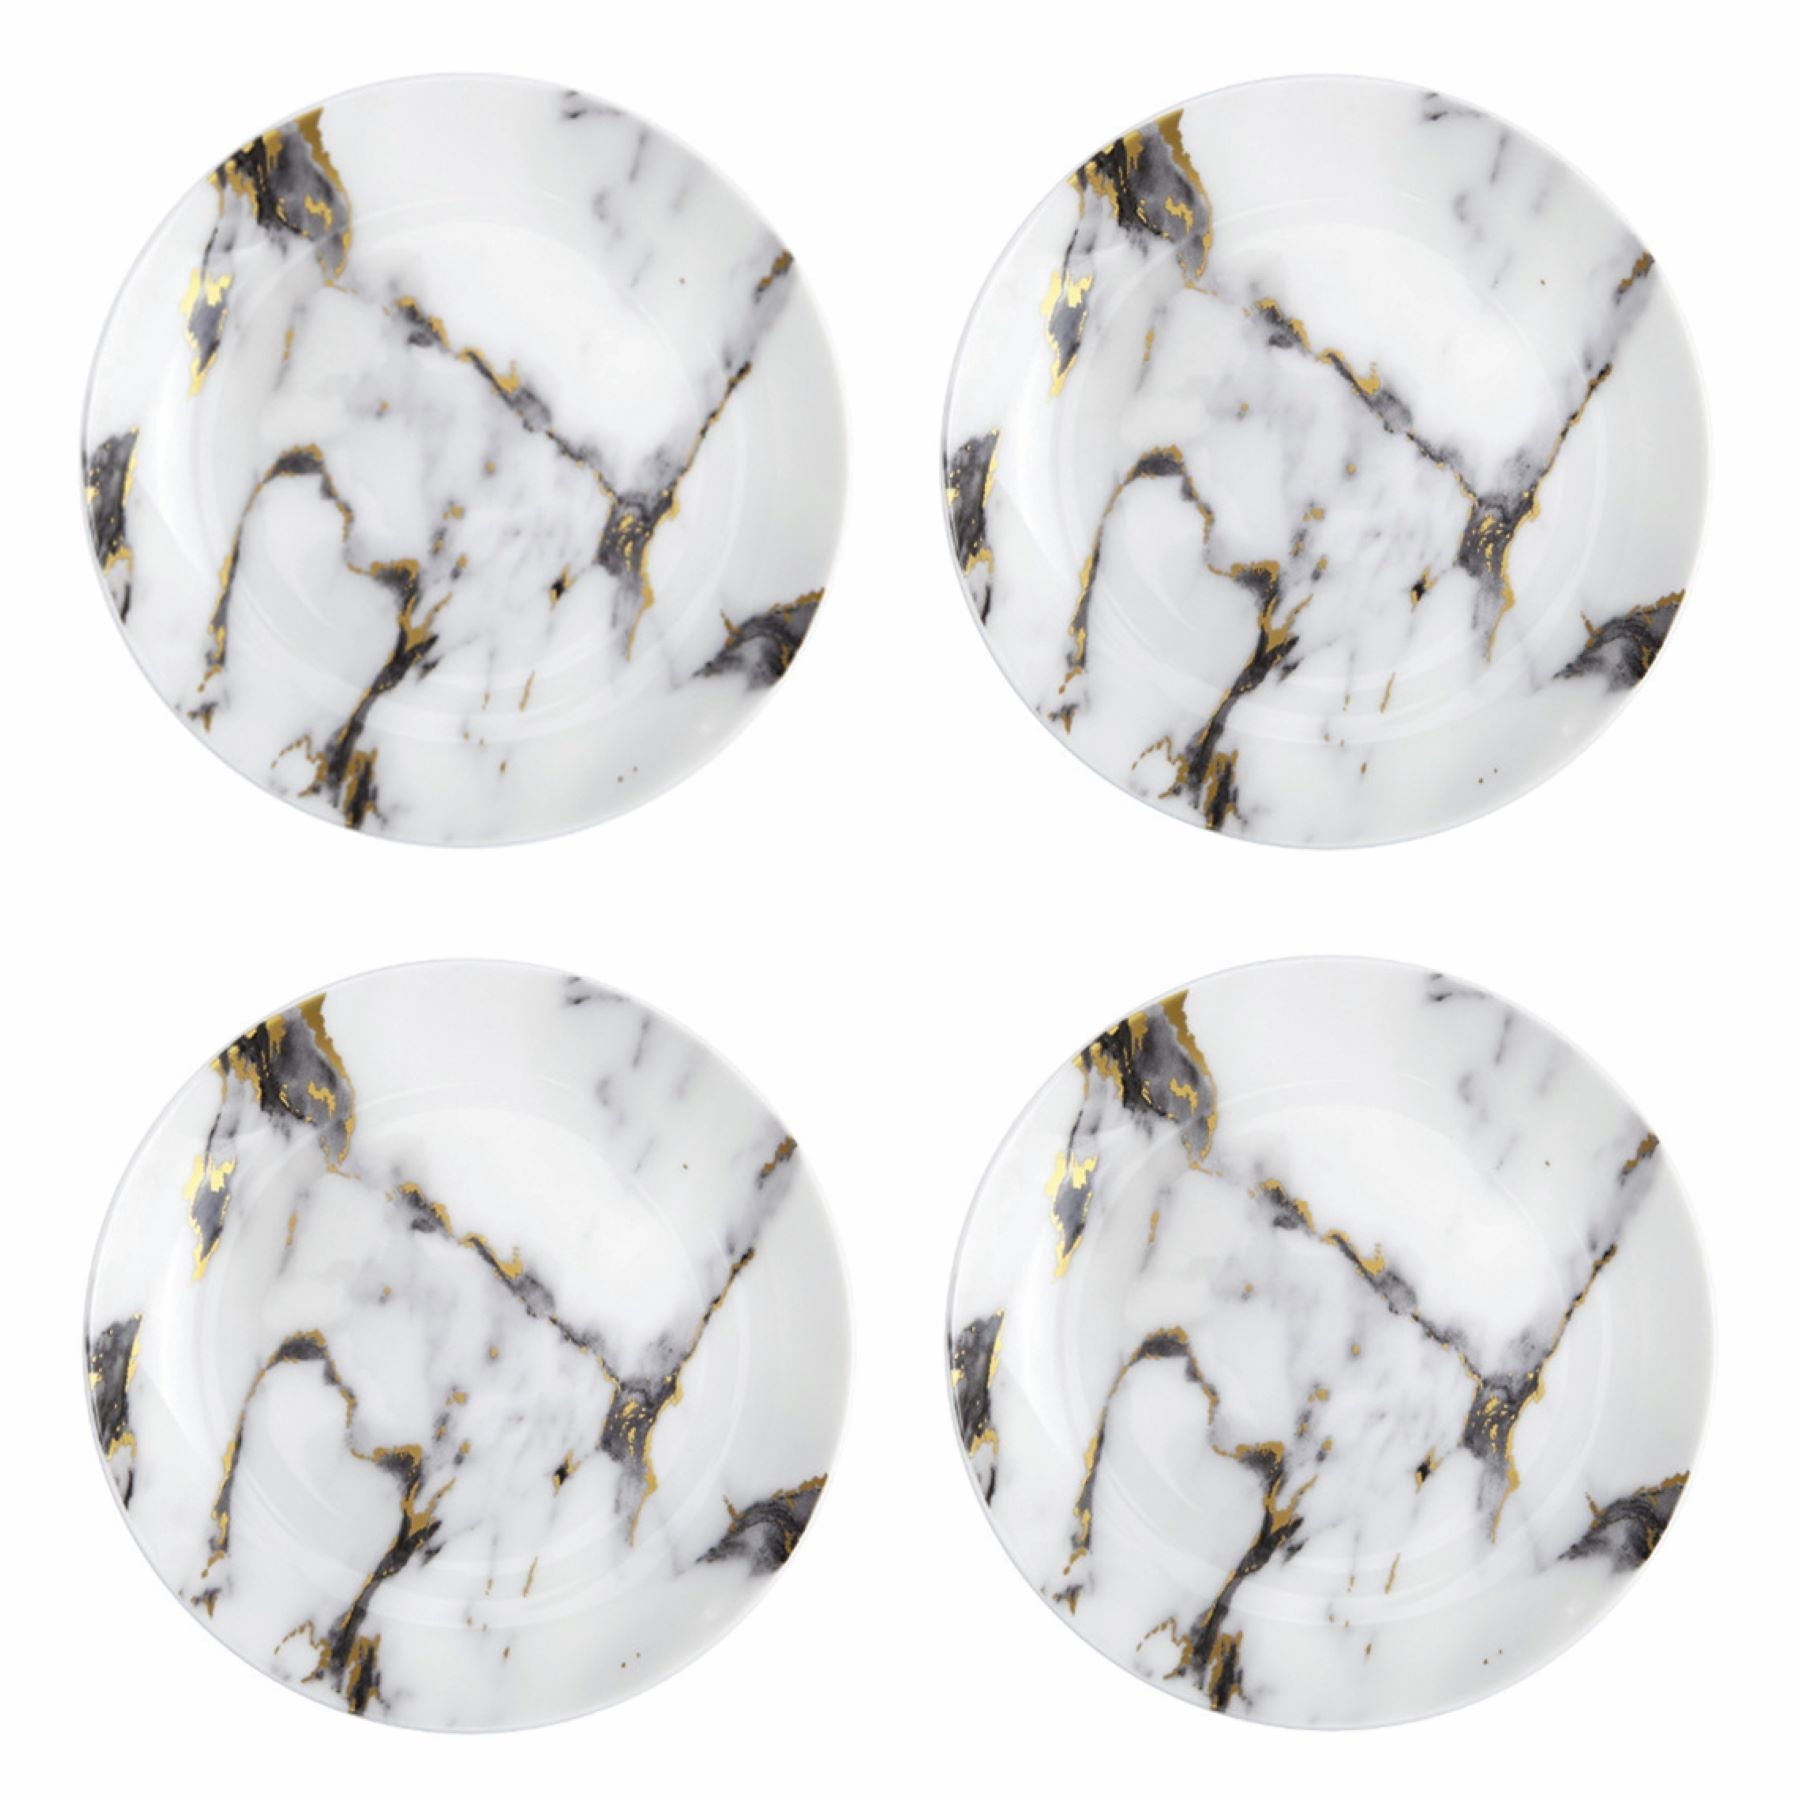 Prouna Marble Venice Fog Set of 4, Canape Plates White Background Photo